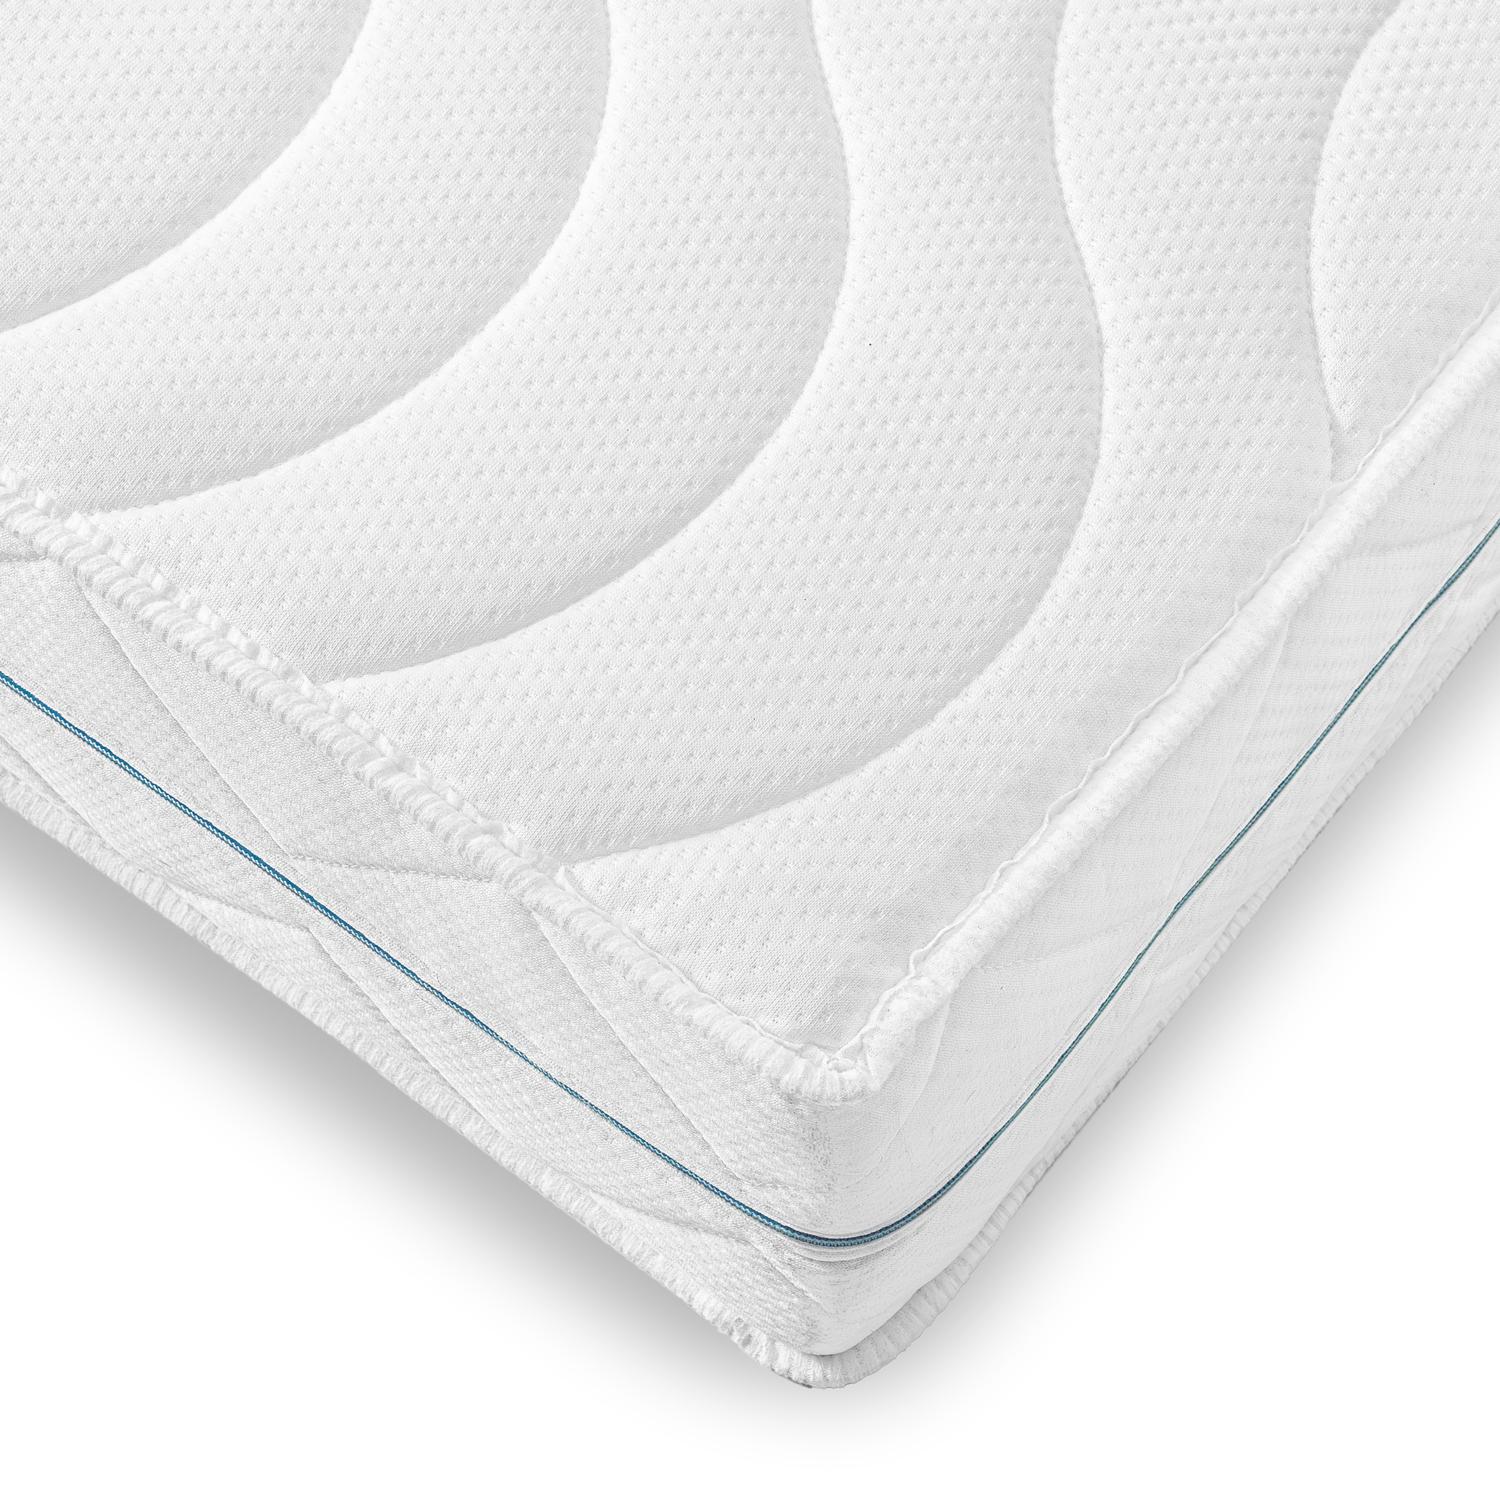 Supportho Premium yatak kılıfı 160 x 200 cm, yükseklik 18 cm